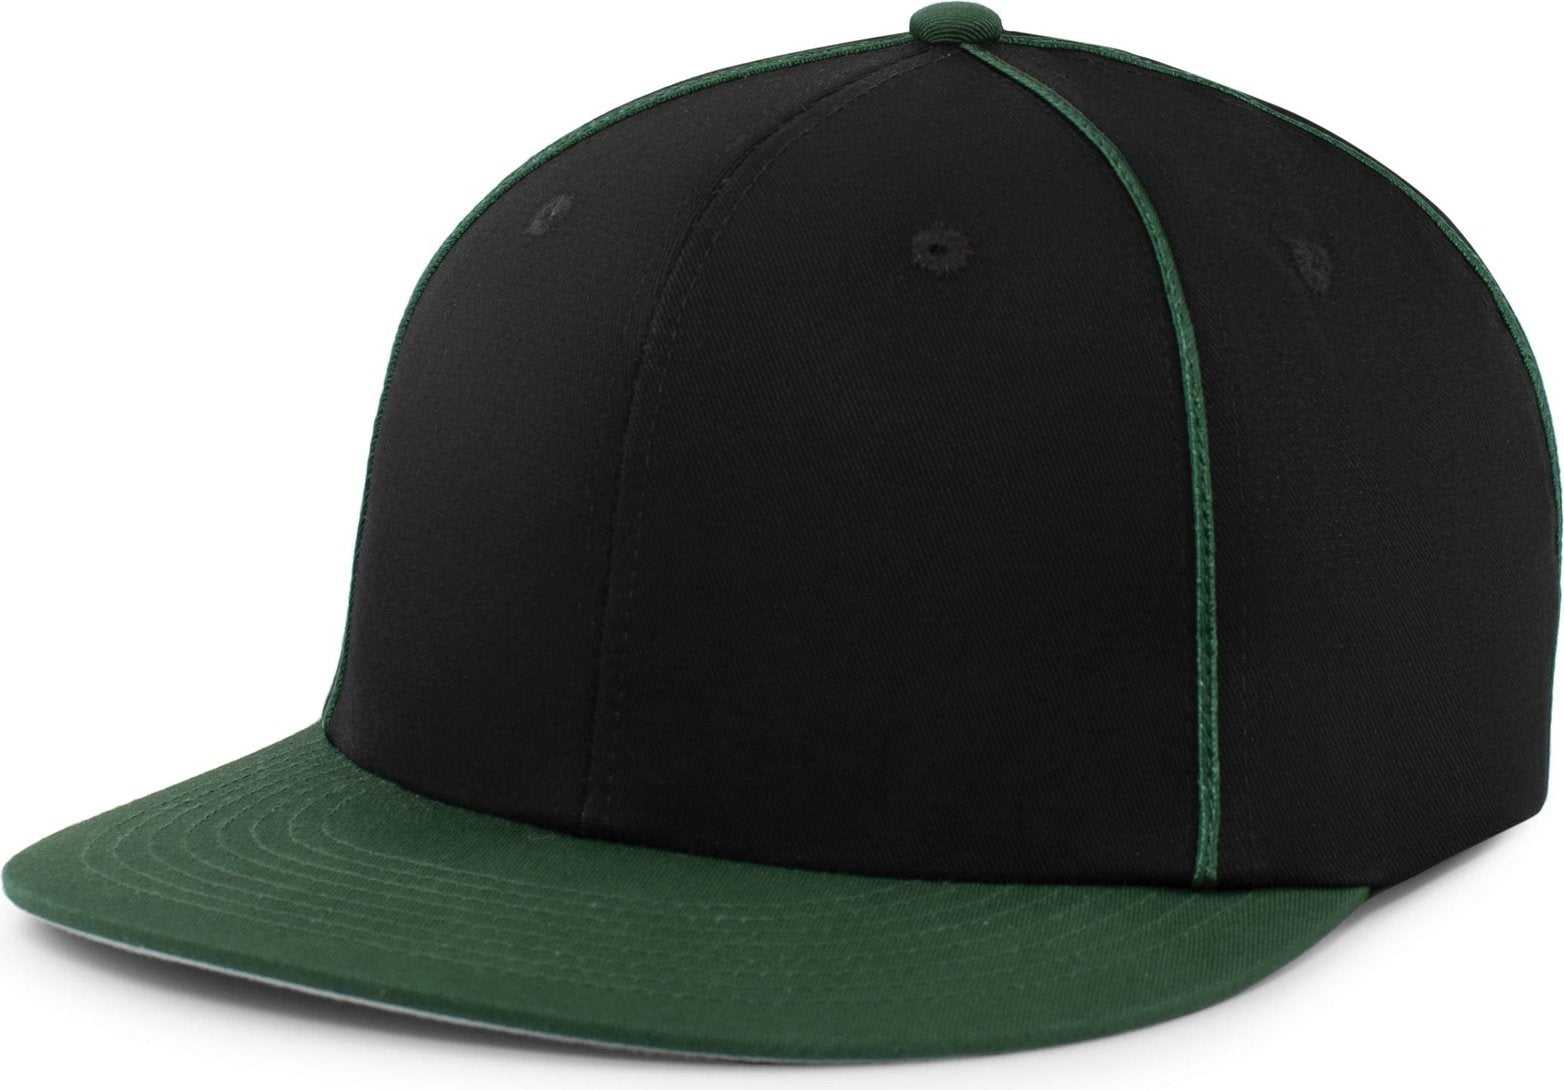 Pacific Headwear P820 Momentum Team Cap - Black Dark Green - HIT a Double